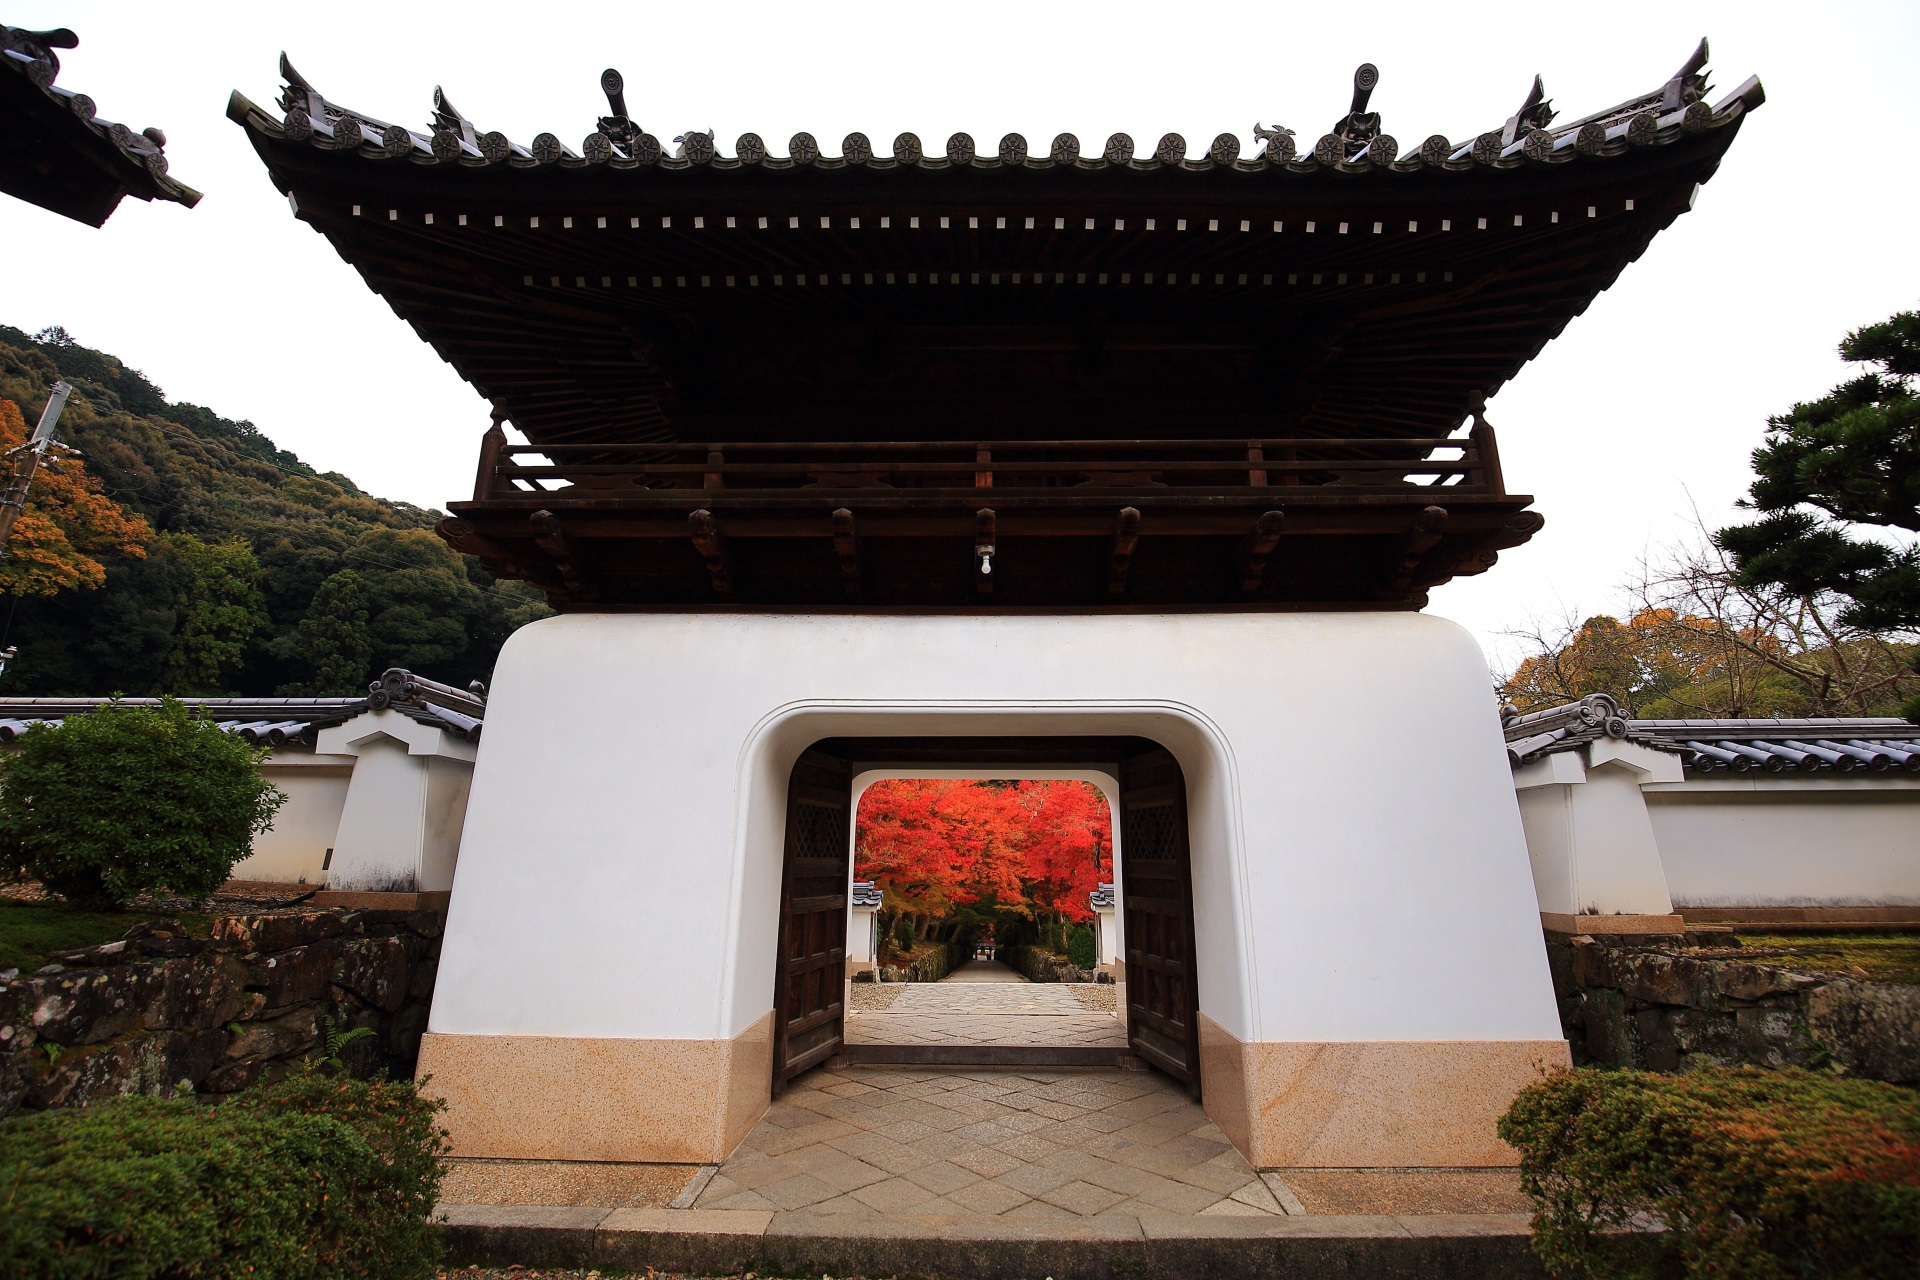 紅葉溢れる琴坂へと続く白壁の綺麗な興聖寺の龍宮門